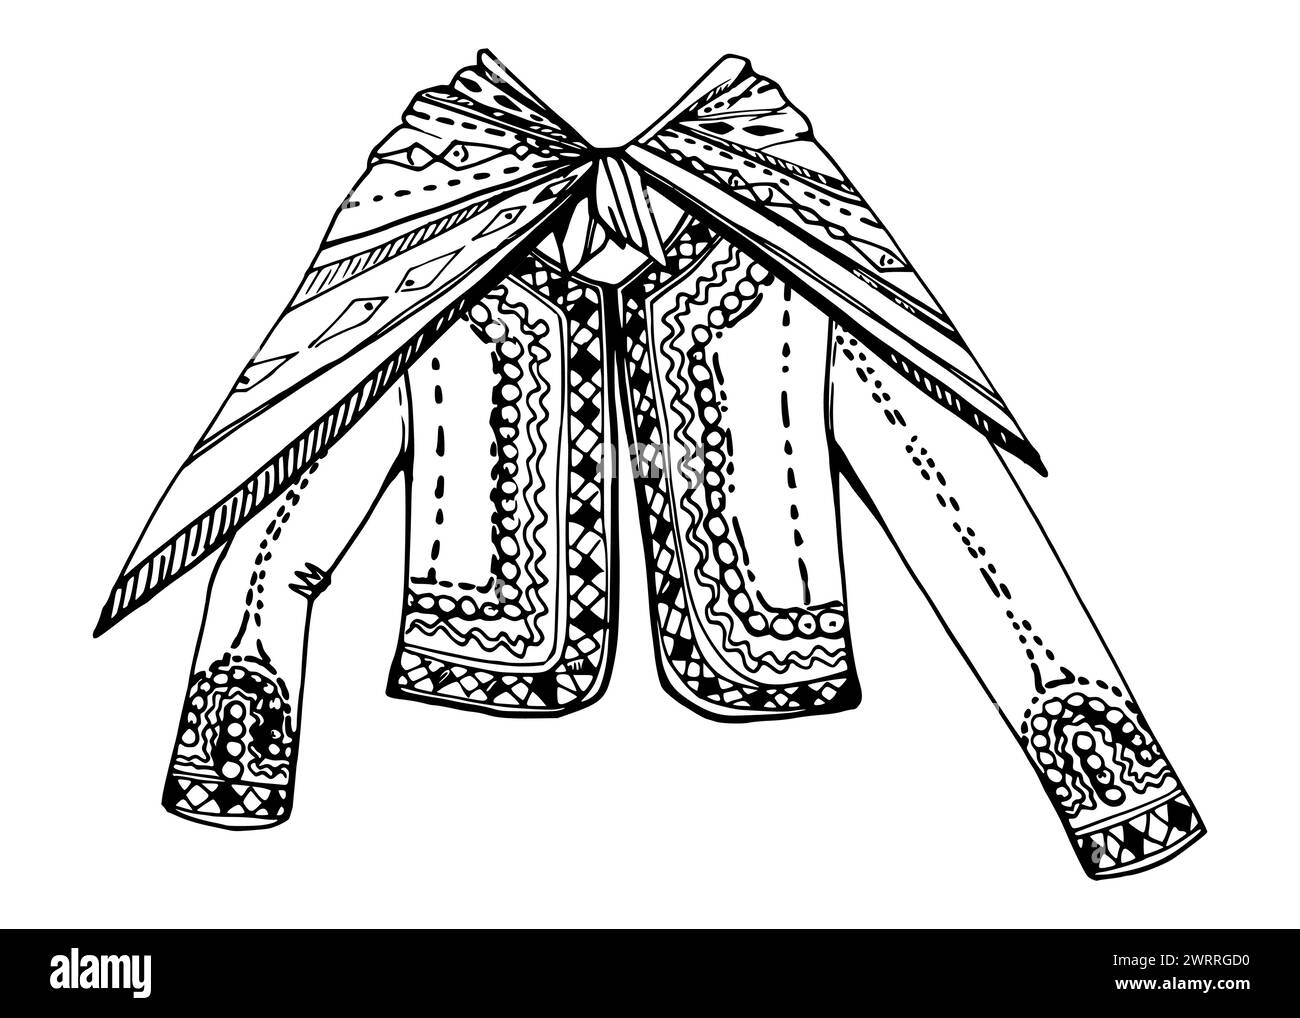 Illustrazione vettoriale a inchiostro disegnato a mano, abiti indiani nazionali ricamati cultura della moda dell'America centro-meridionale. Composizione isolata su bianco Illustrazione Vettoriale